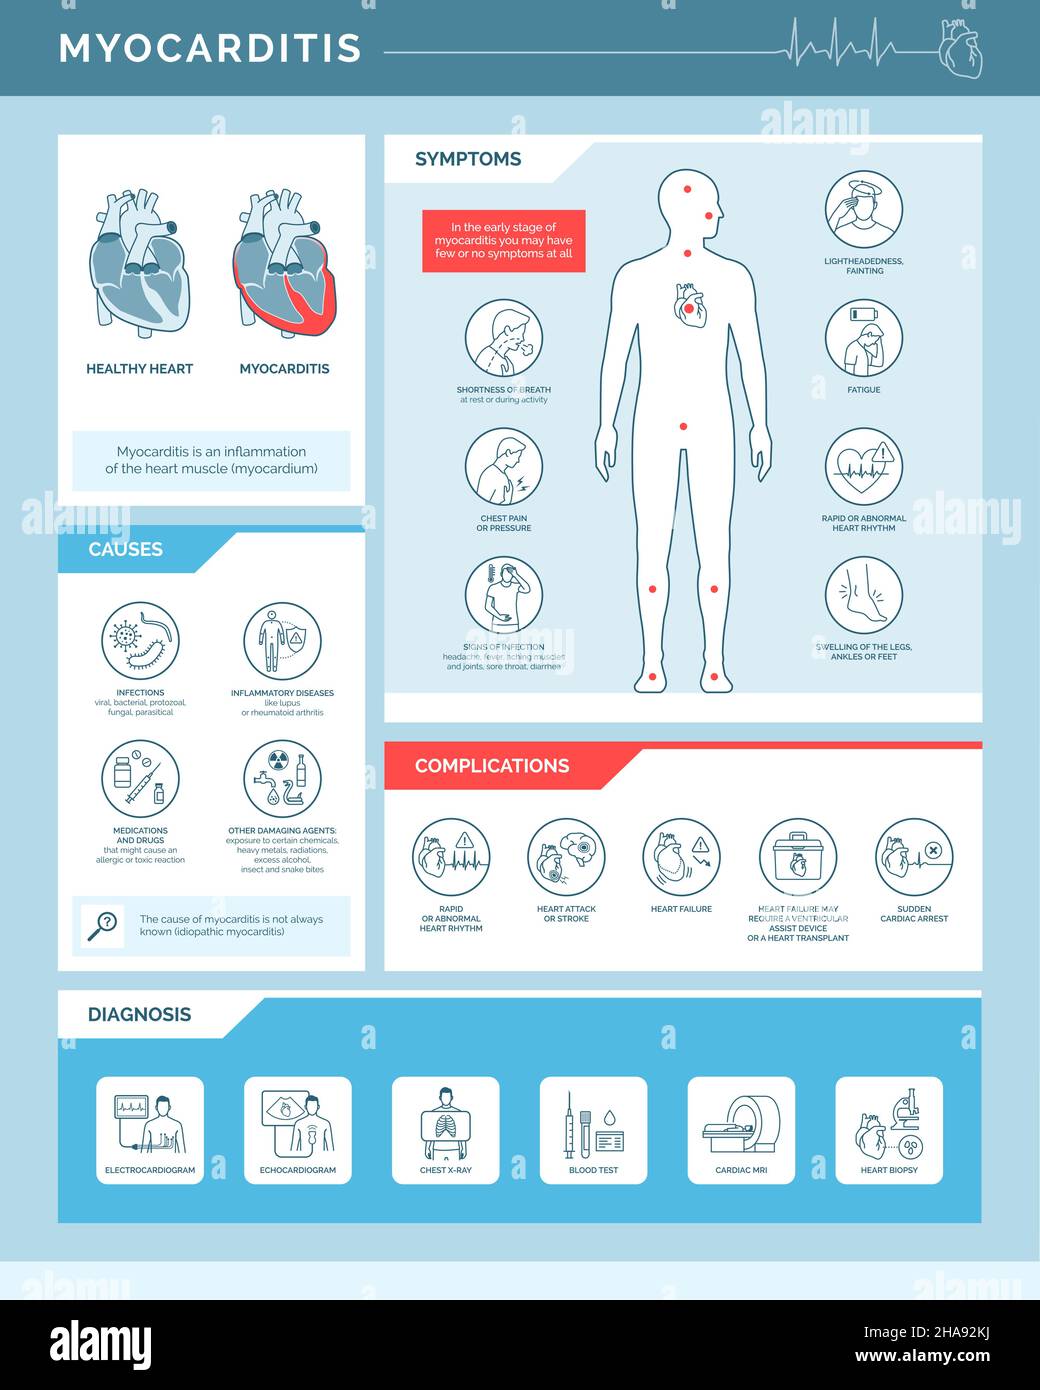 Miocardite infiammazione del cuore: Cause, sintomi, complicazioni e diagnosi, infografica medica con icone Illustrazione Vettoriale